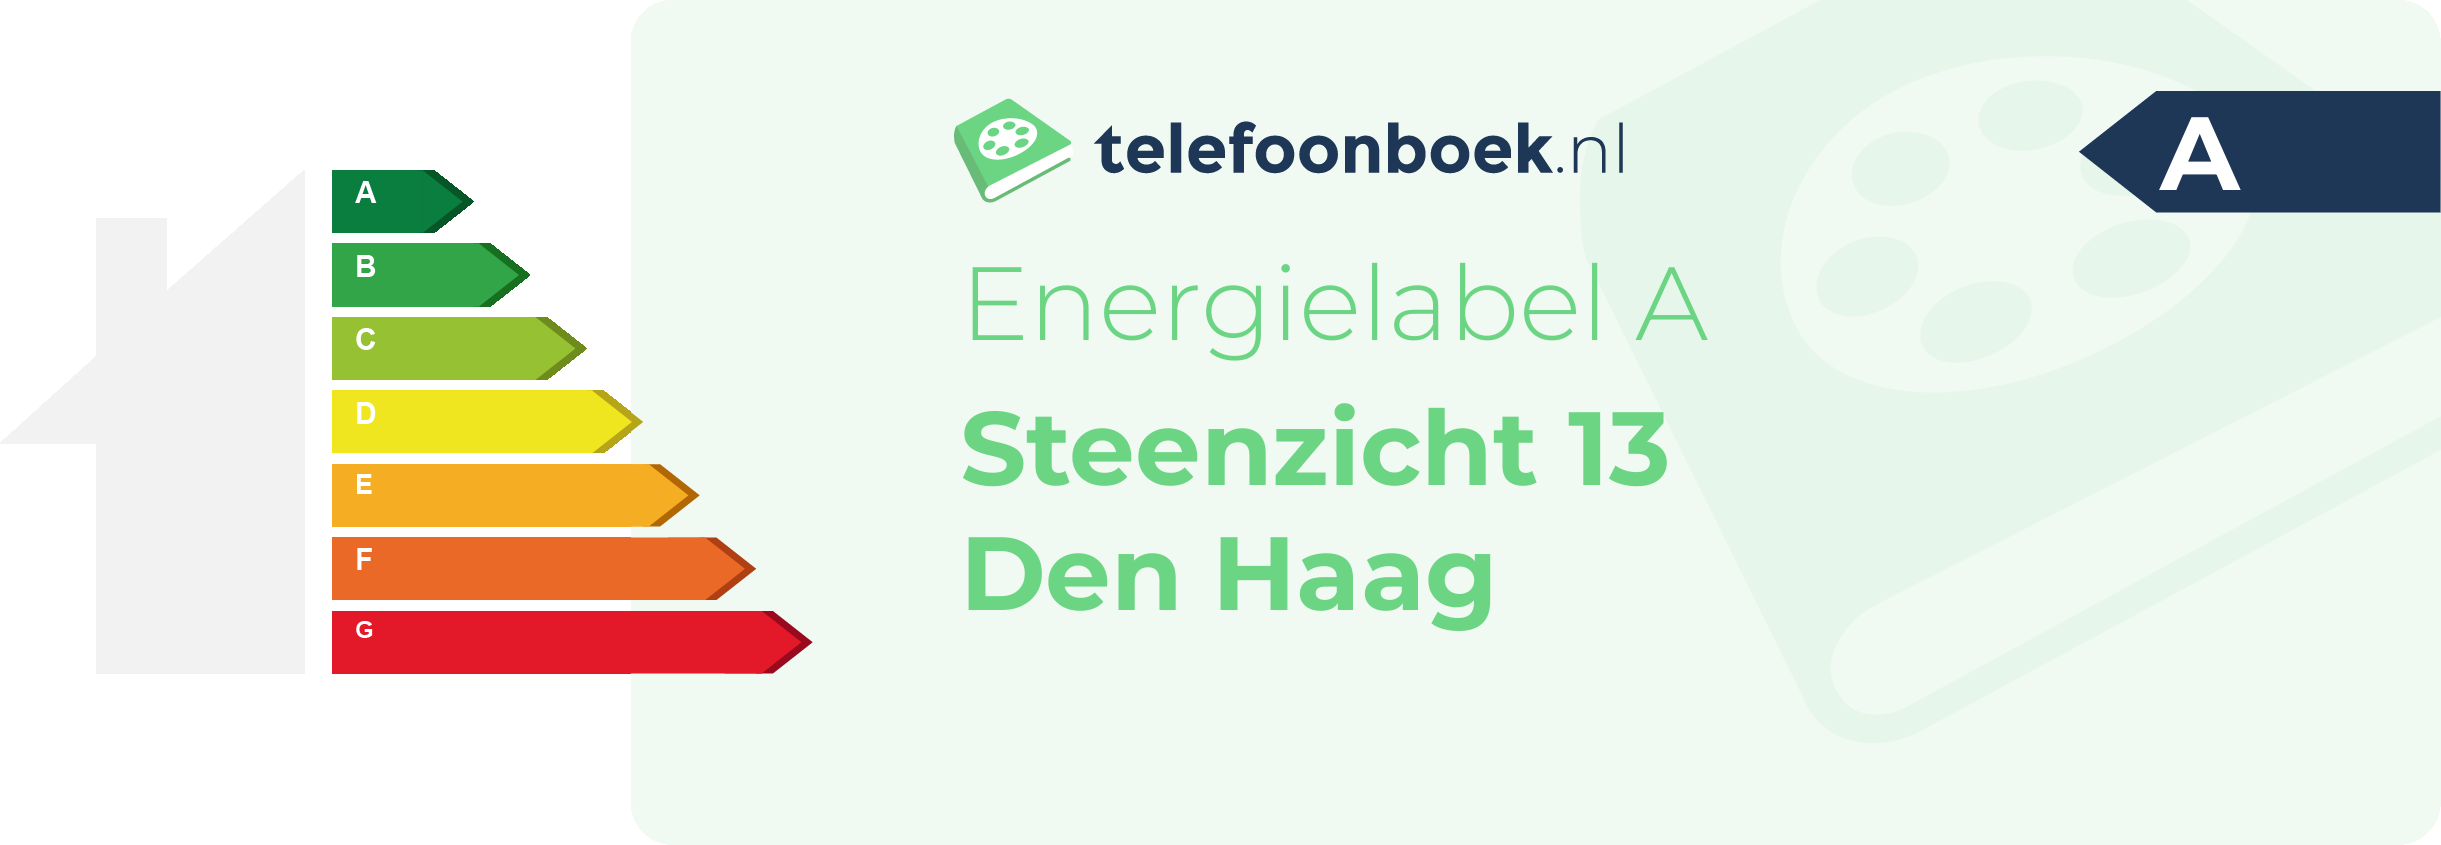 Energielabel Steenzicht 13 Den Haag